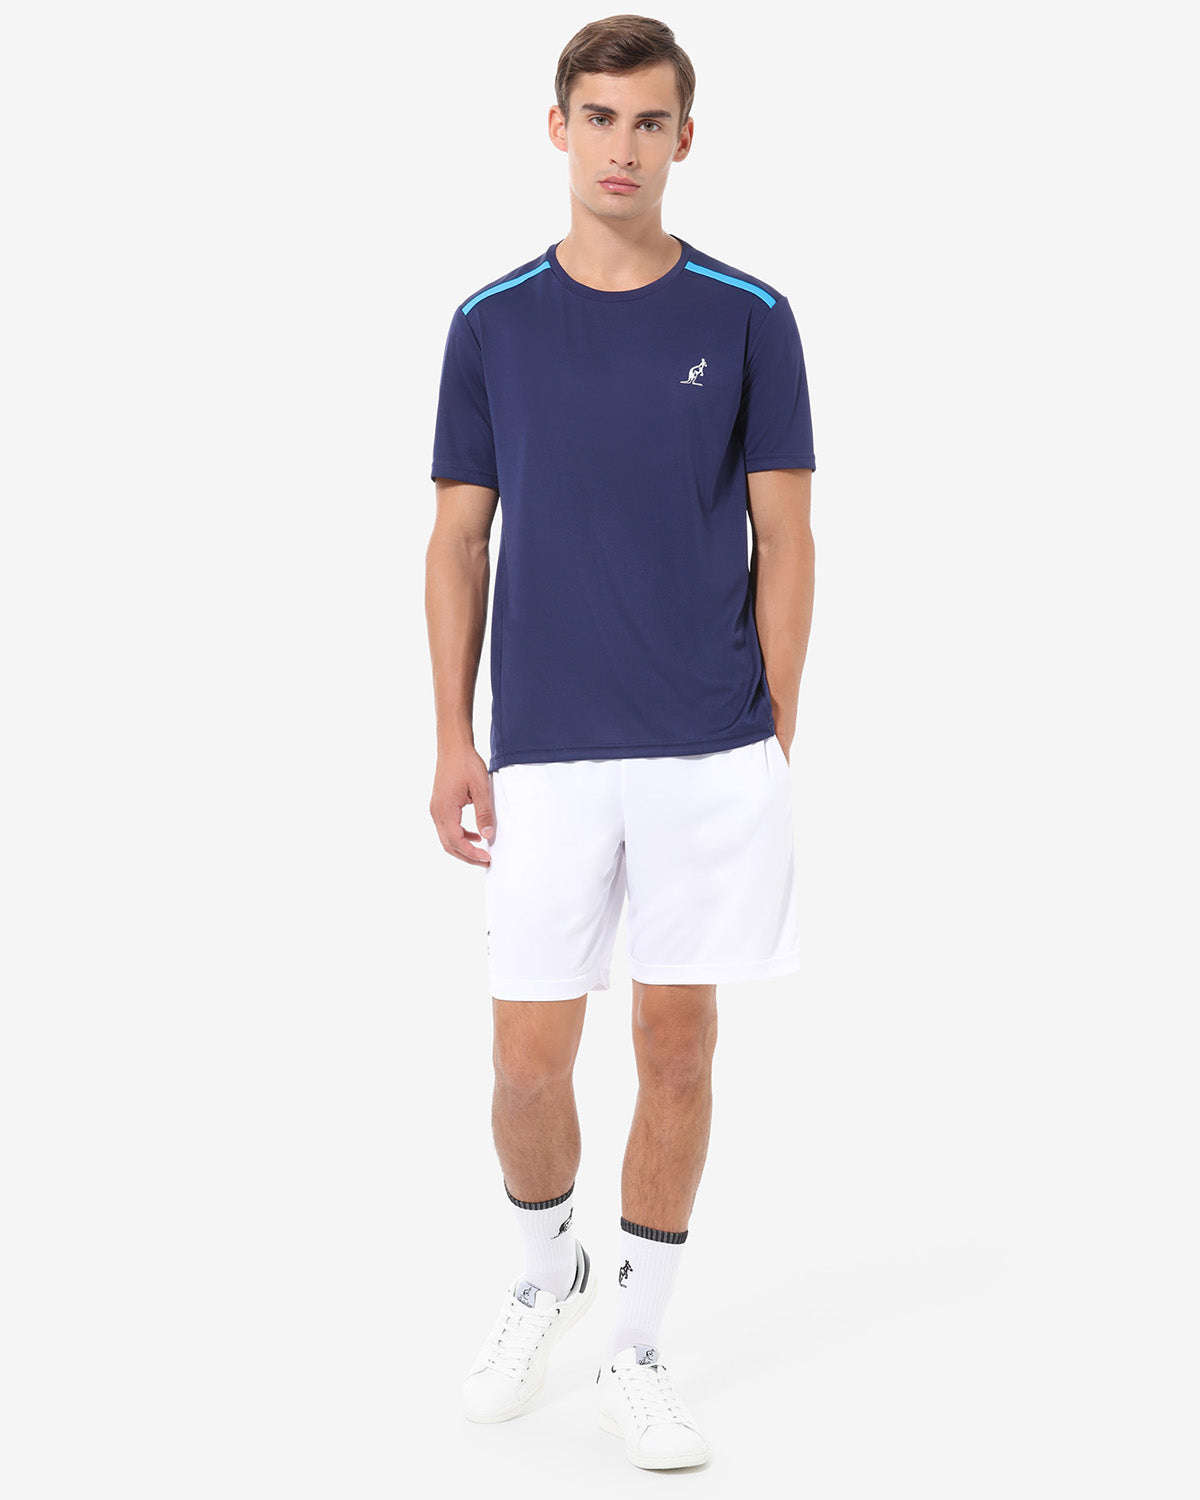 T-Shirt Ace: Australian Tennis